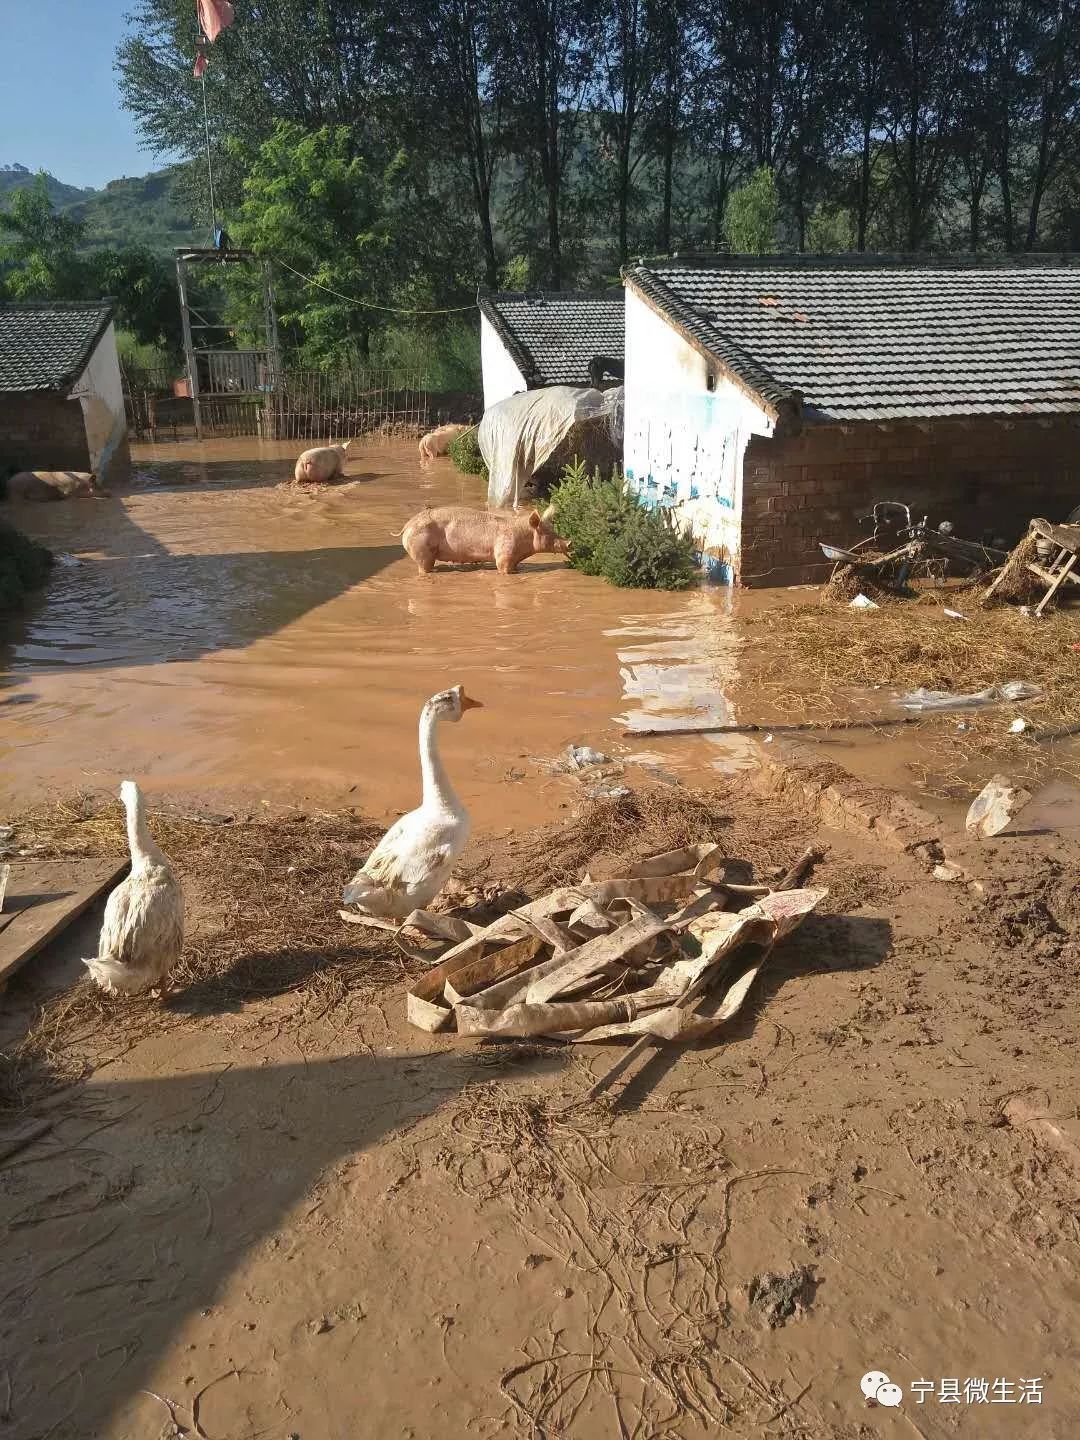 庆阳一养猪场深夜遭洪水袭击,50只猪仔溺亡!